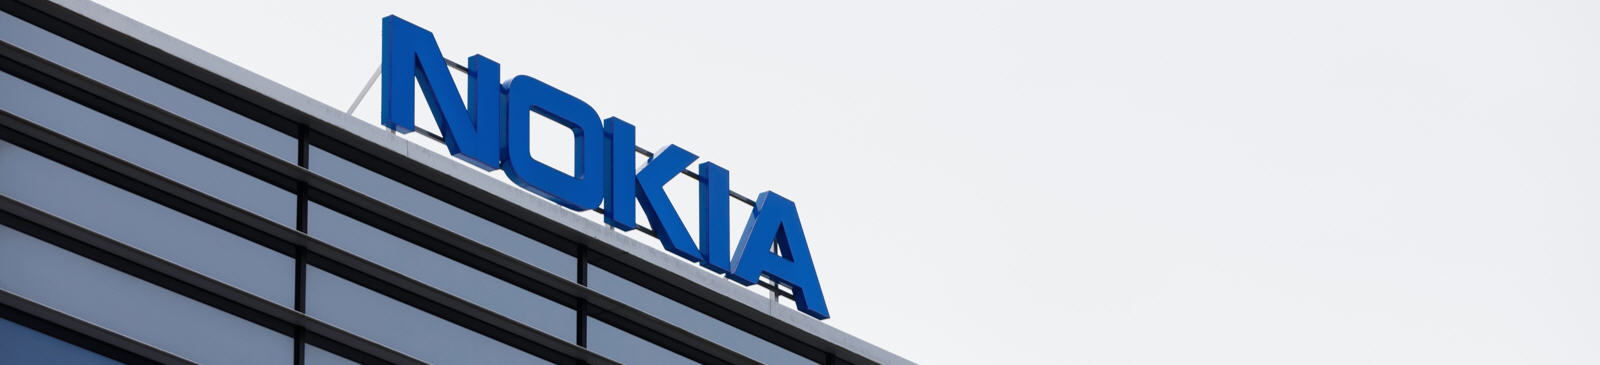 Le cours de l'action Nokia (NOK).